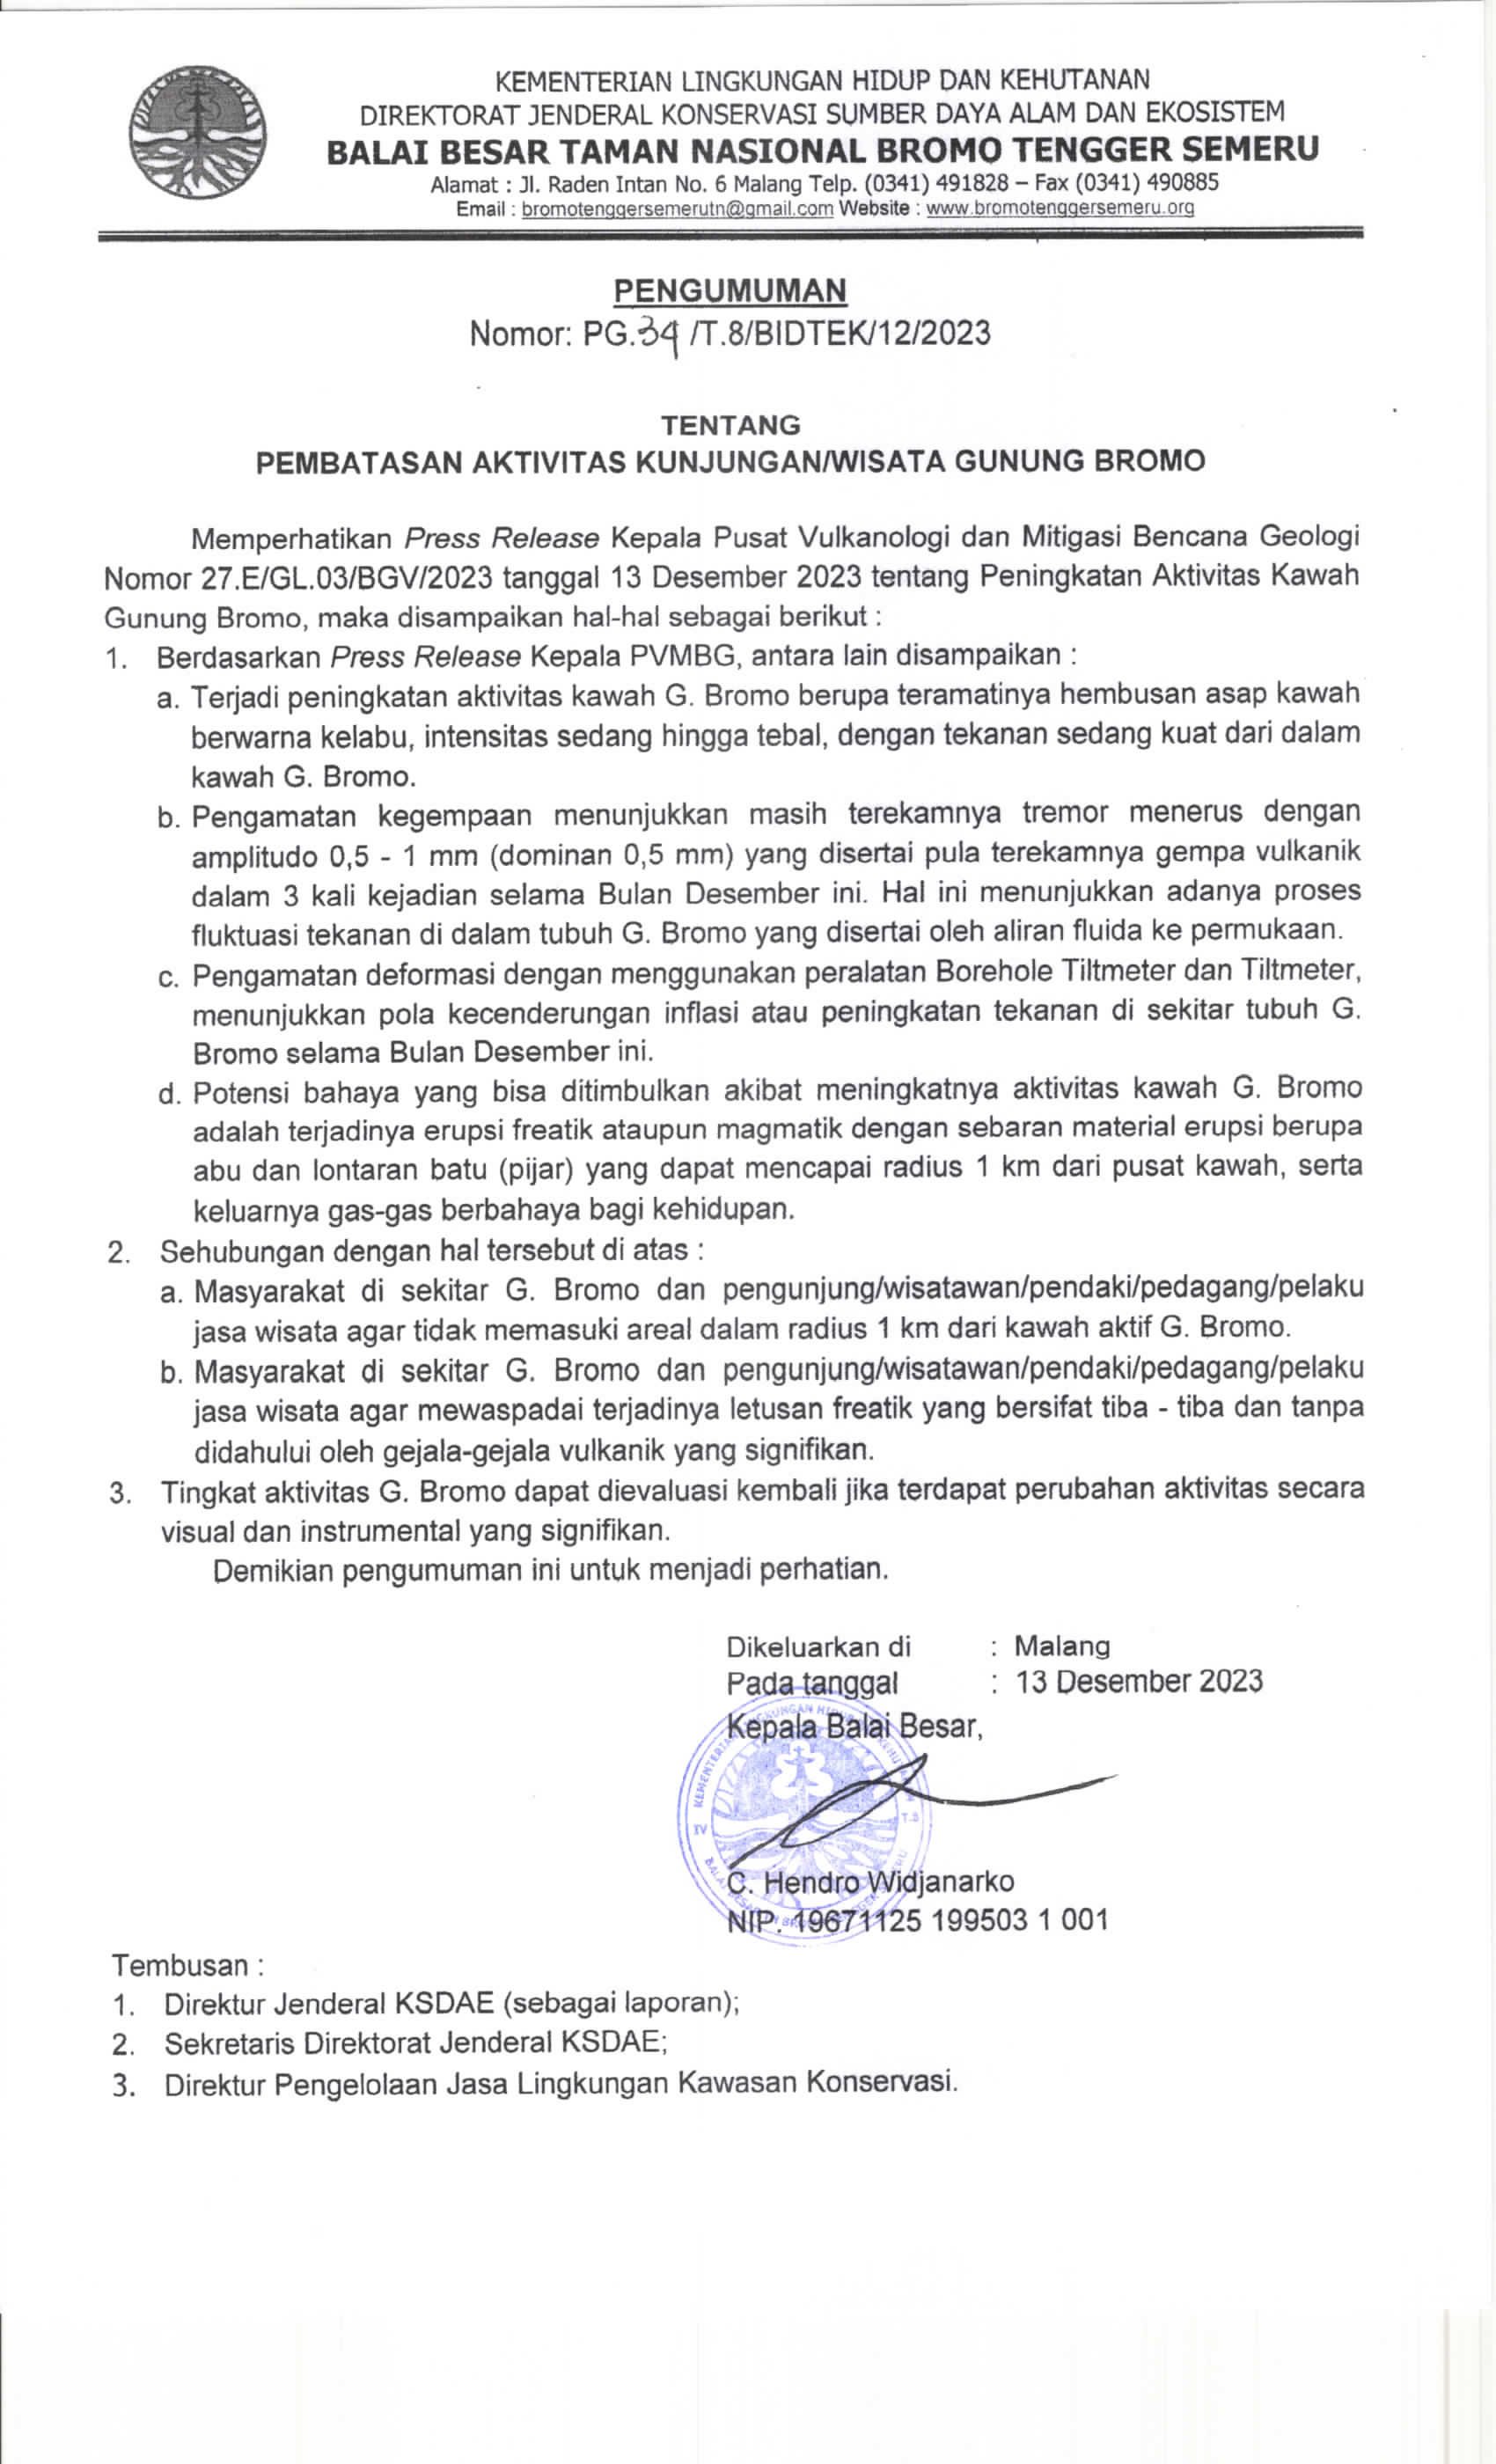 Press release tentang pembatasan aktivitas di Gunung Bromo